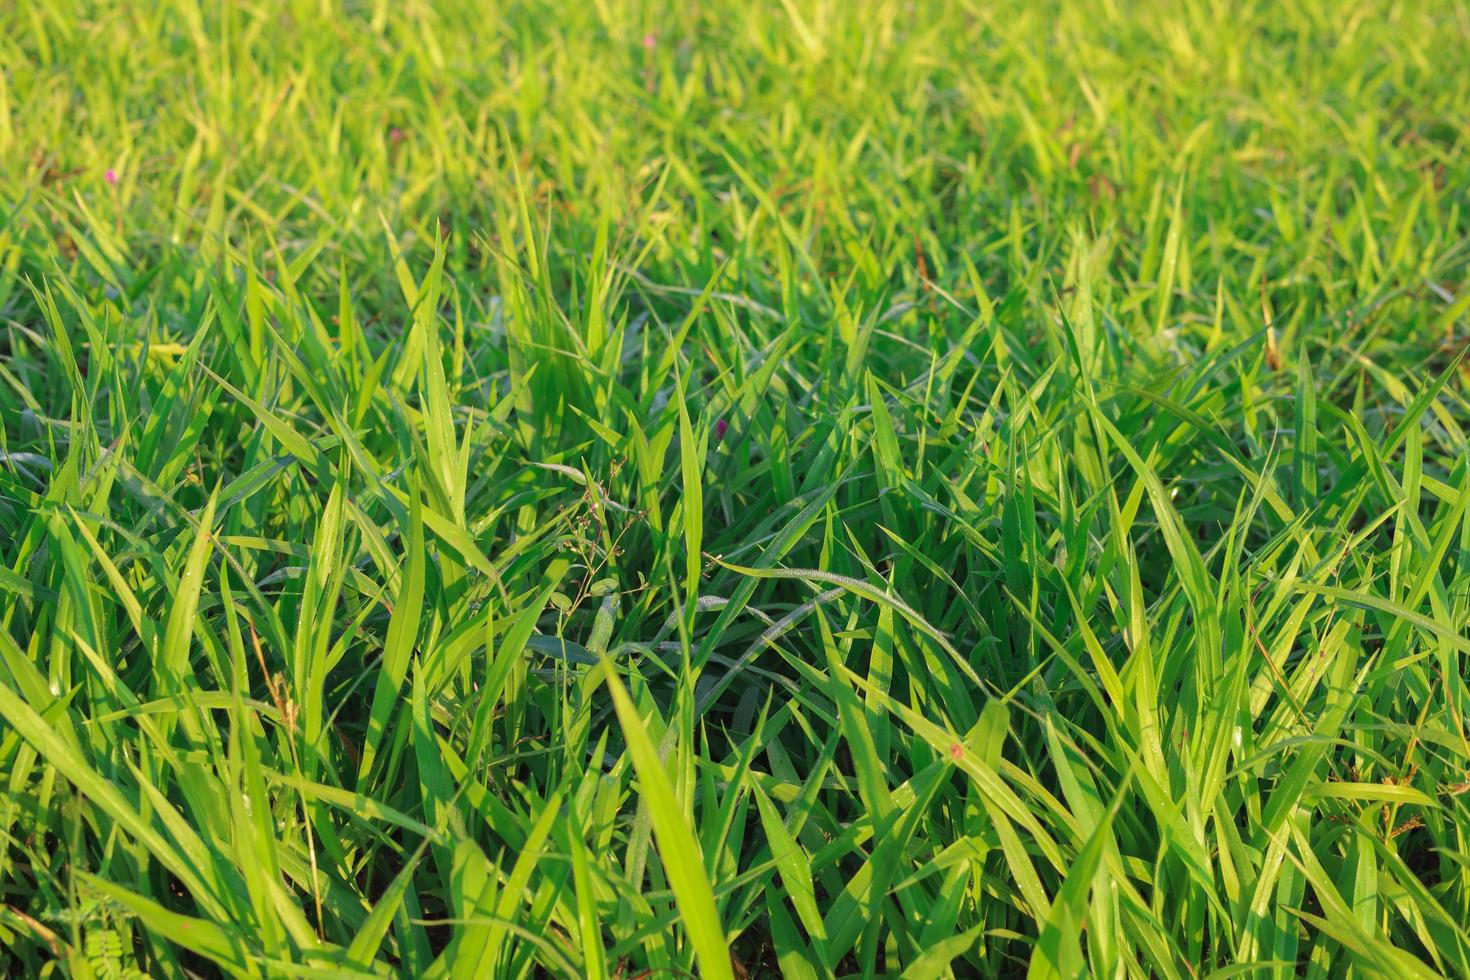 Chúc mừng bạn đã tìm đến bức ảnh tuyệt đẹp với cỏ Mombasa Guinea Paspalum Maximum Cv. Mombasa cho động vật của chúng tôi. Bức ảnh này mang đến cho bạn cảm giác thoải mái và yên tĩnh khi bạn nhìn thấy nền khet xanh rực rỡ trải dài dưới bầu trời xanh.